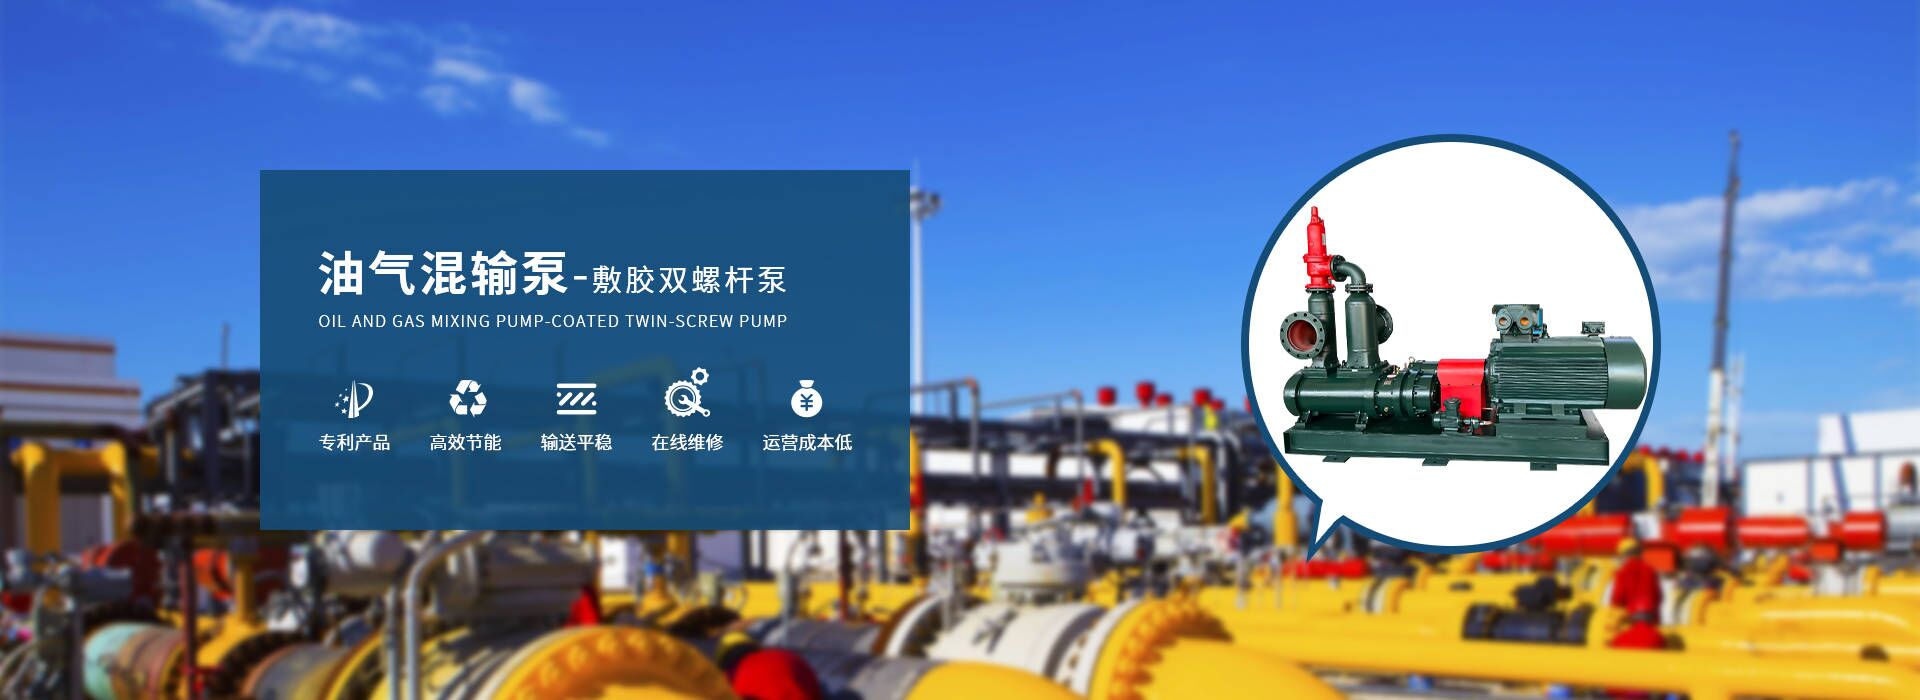 網站首頁-浙江博大泵業有限公司